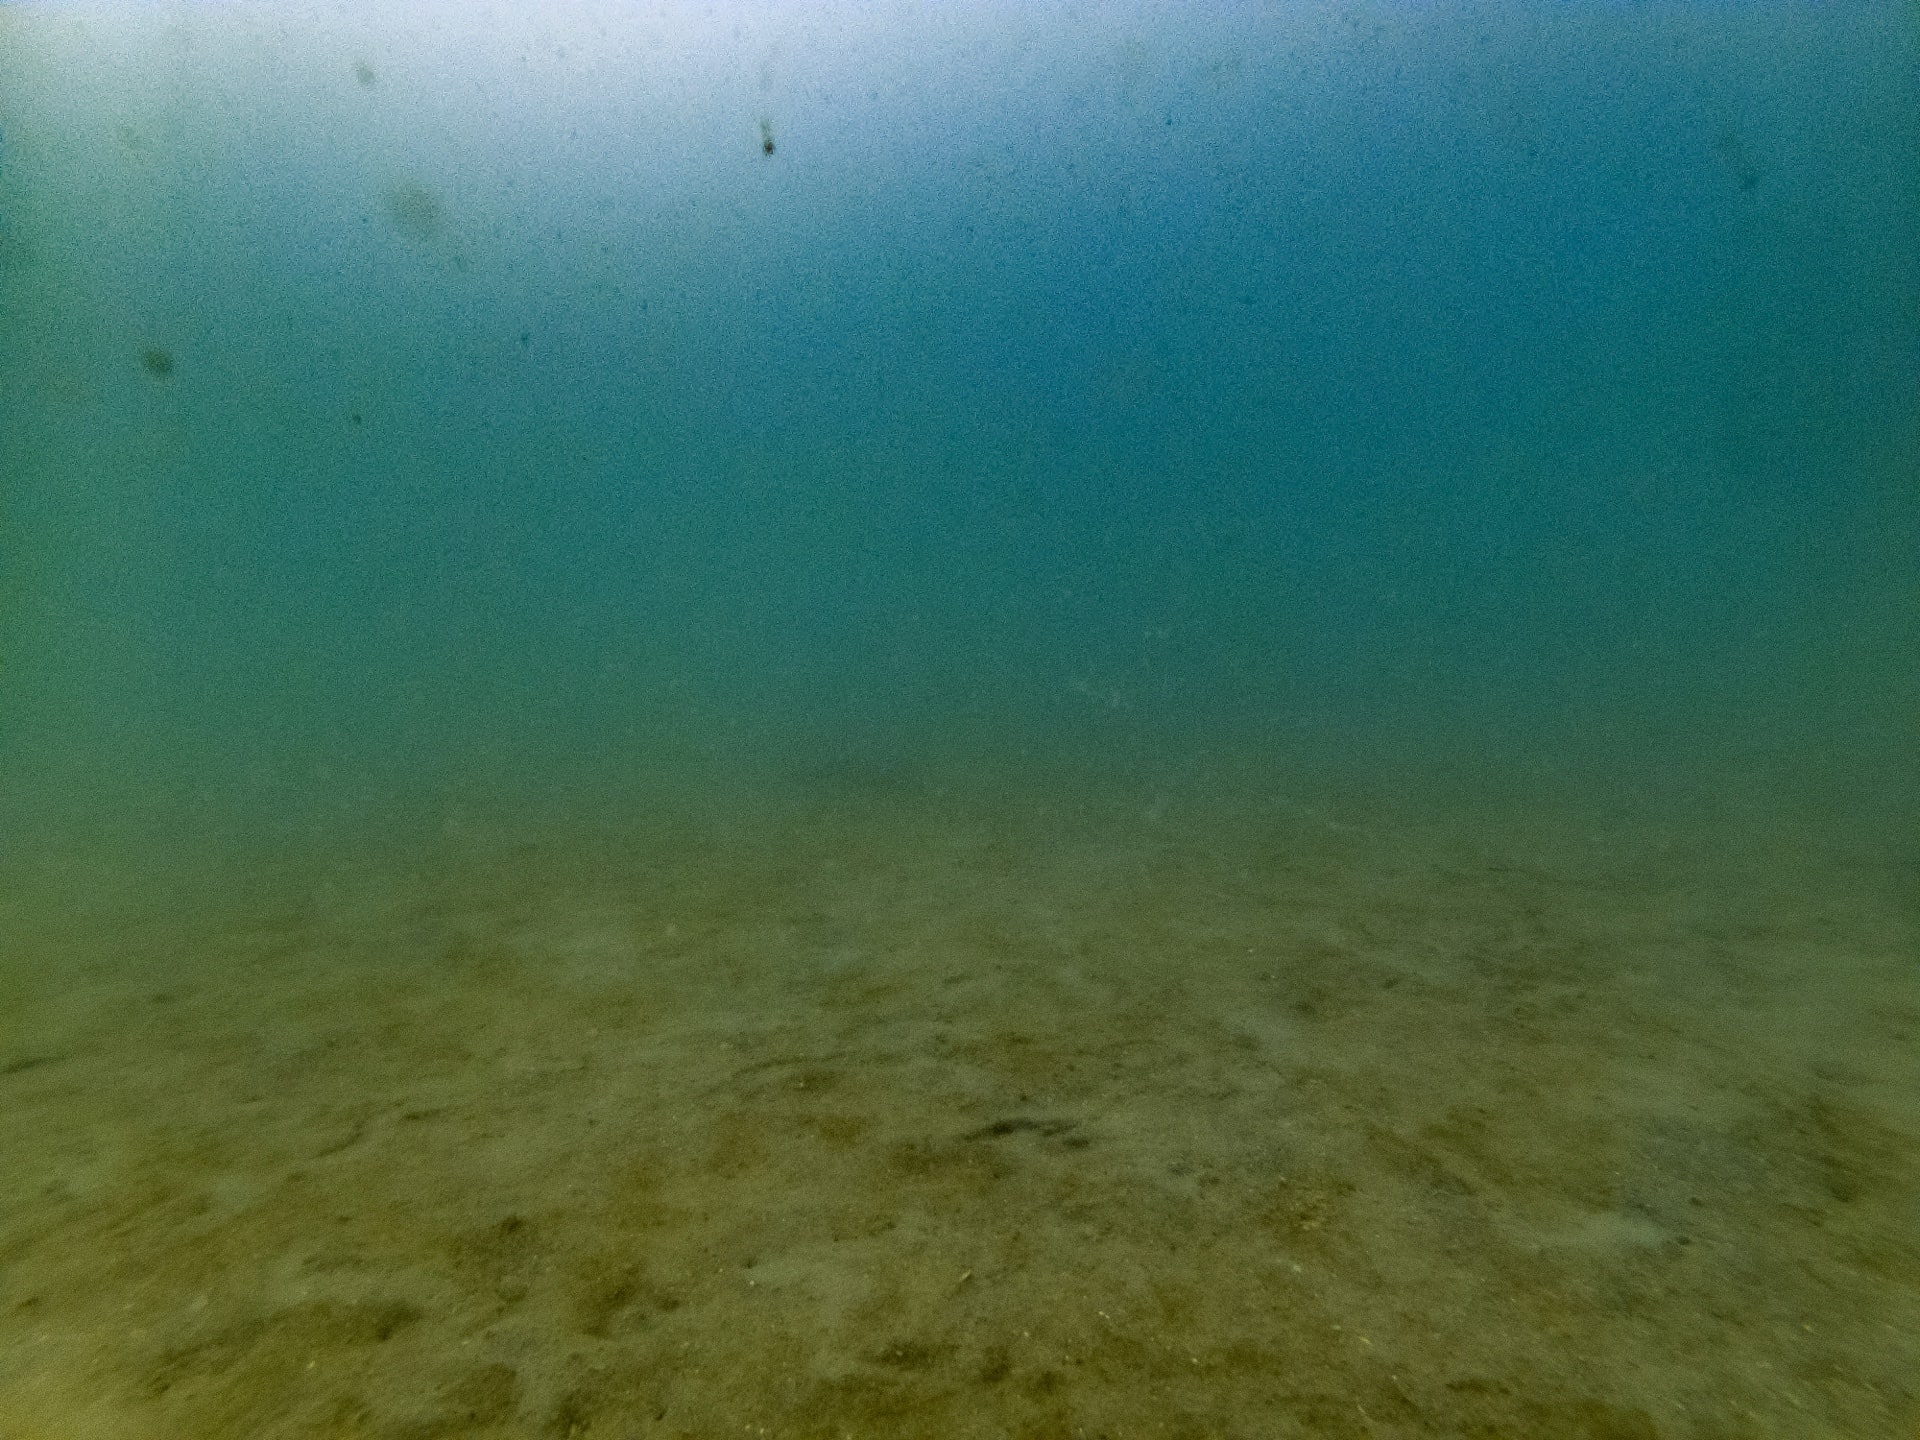 Barren seafloor